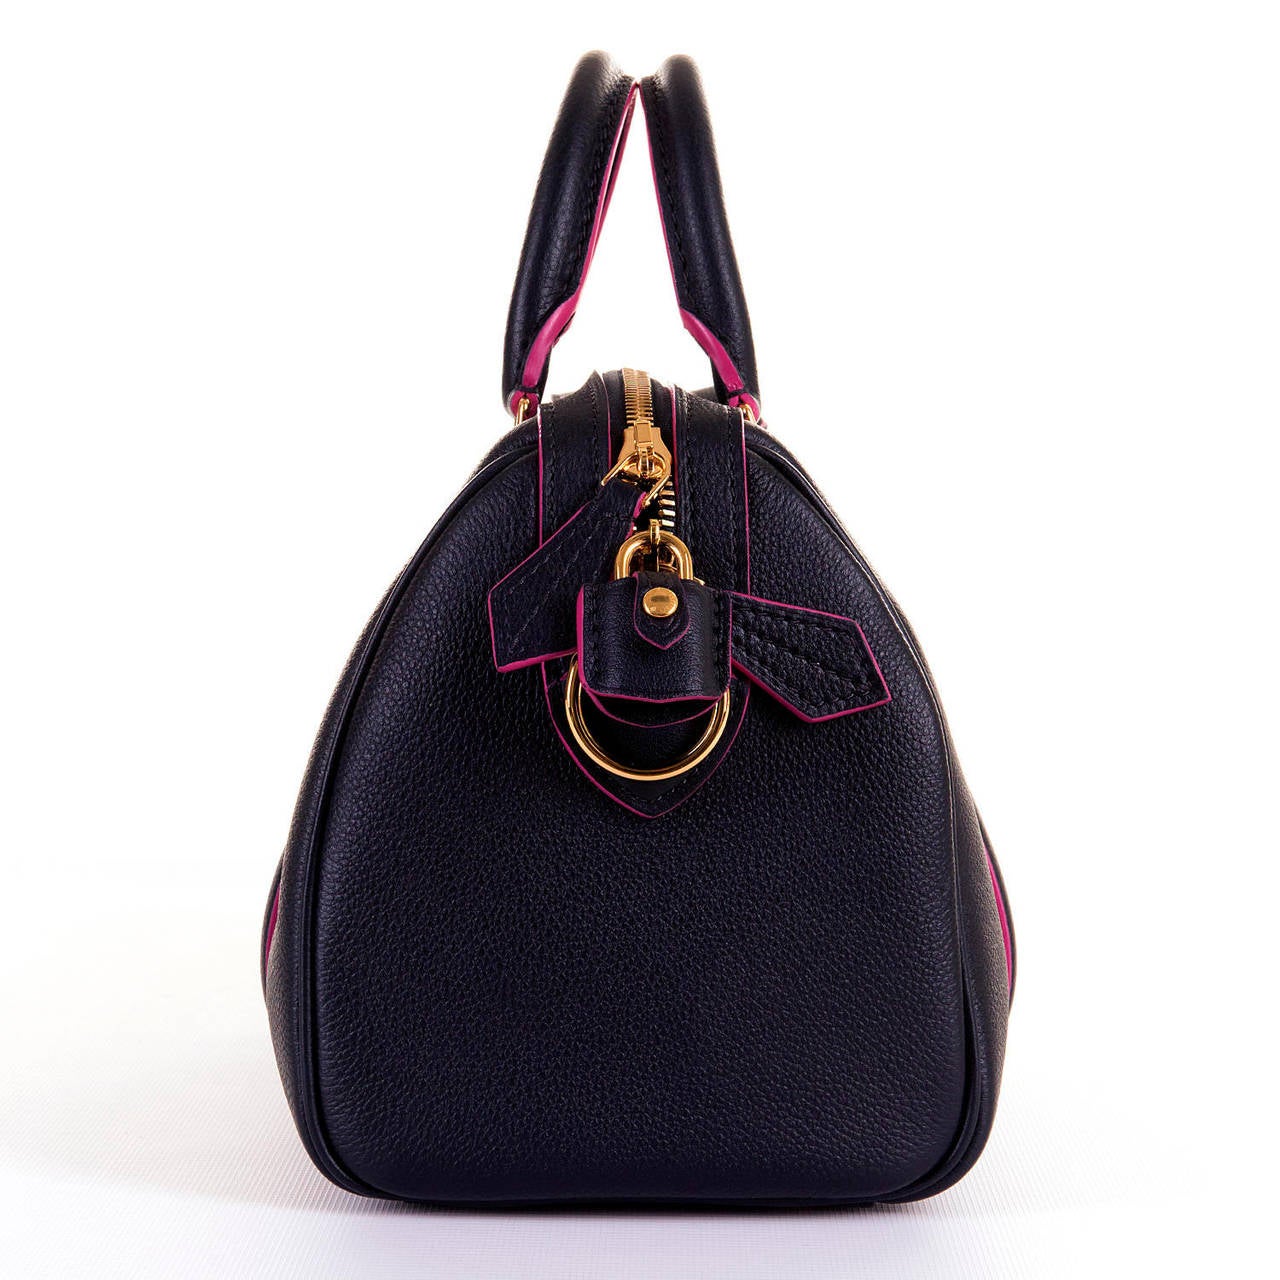 'New & Unused' Limited Edition Louis Vuitton Sofia Coppola 'Veau-Cachmire'  Bag 4